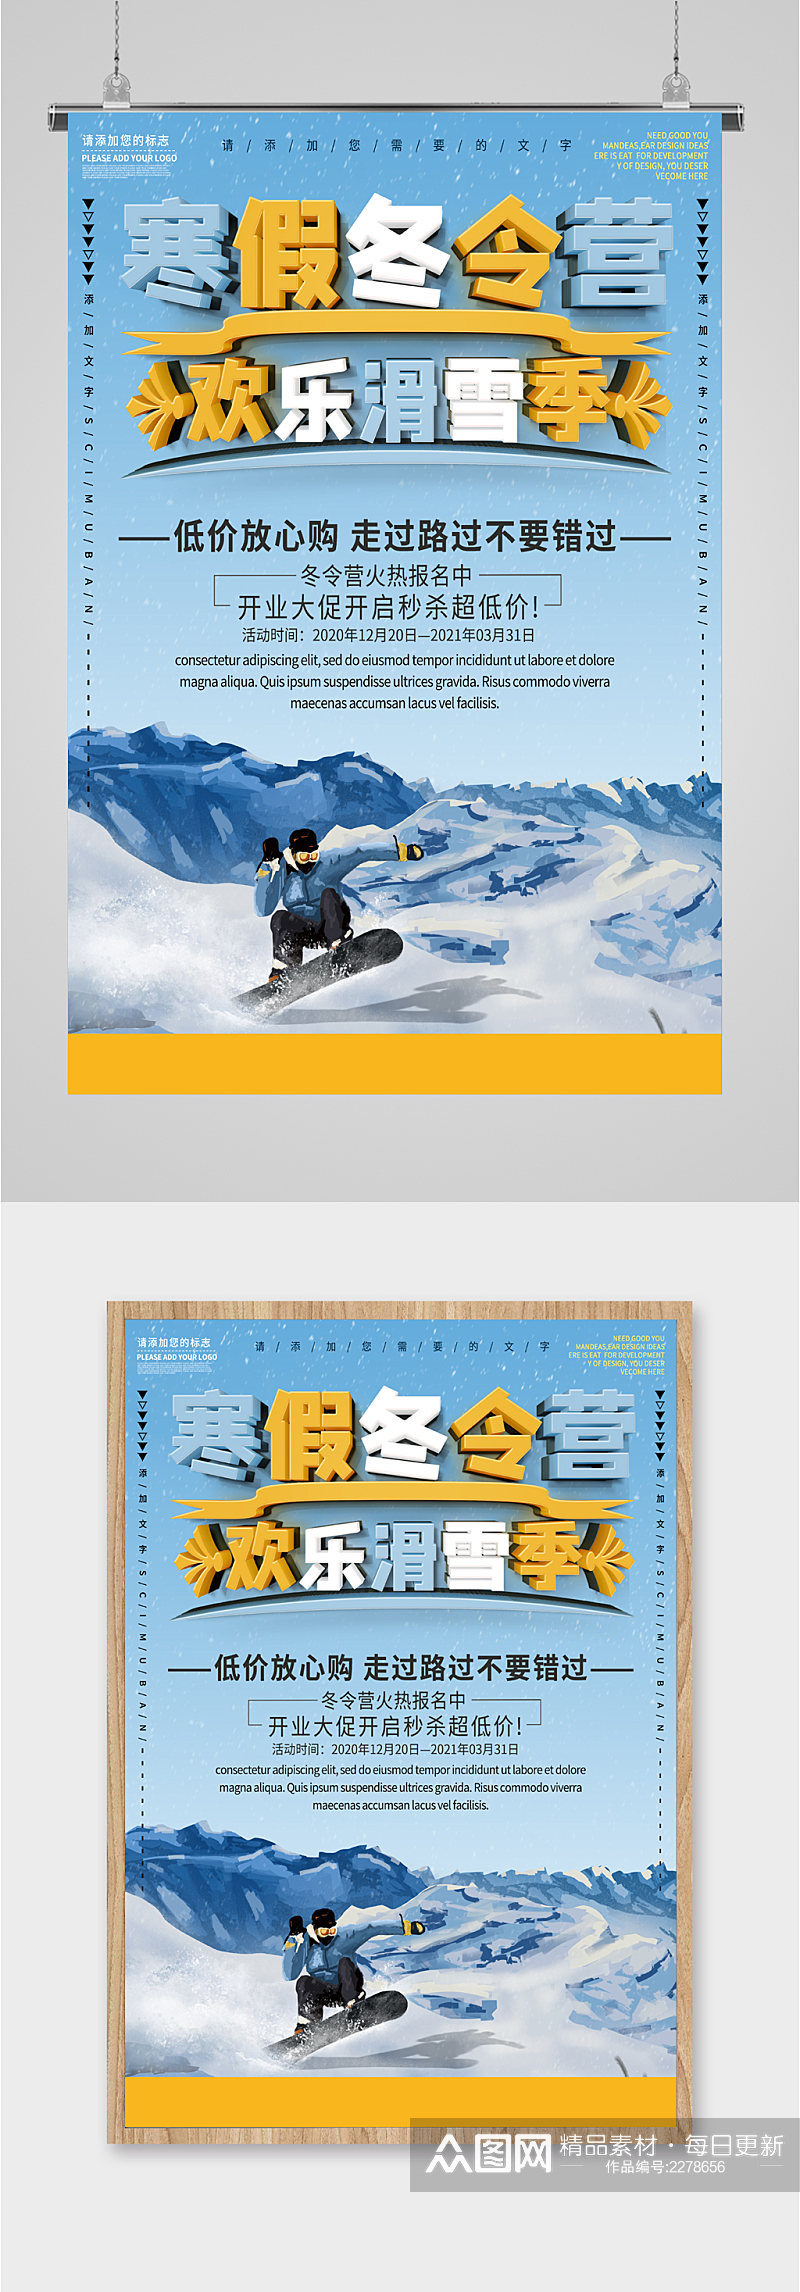 寒假冬令营欢乐滑雪季海报素材